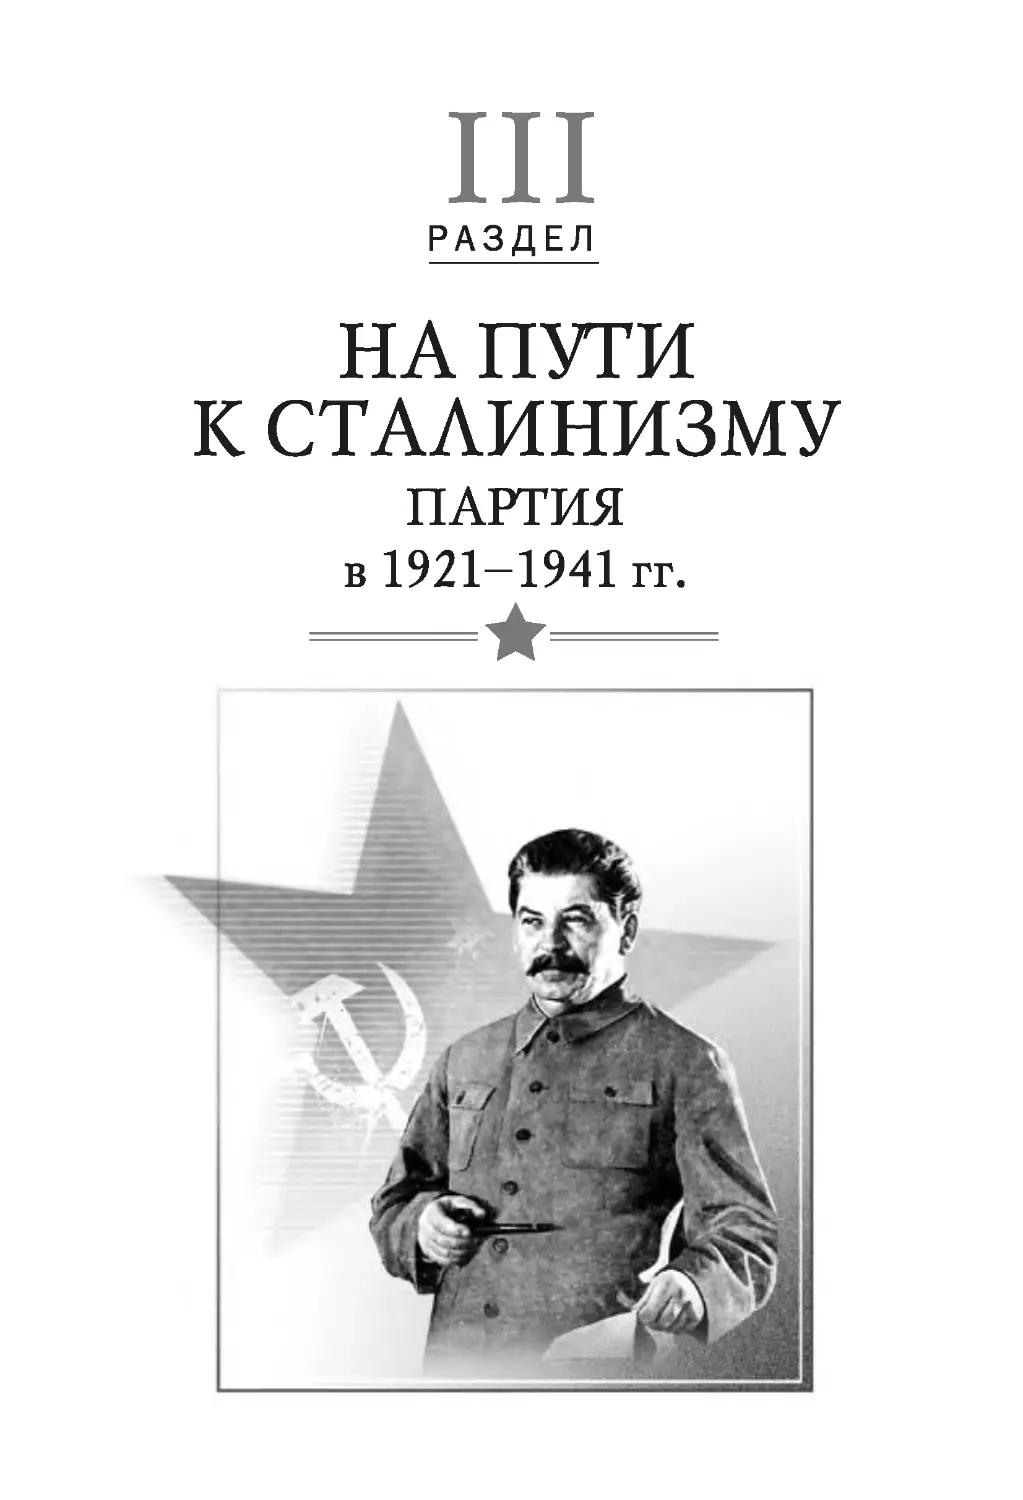 РАЗДЕЛ III. На пути к сталинизму. Партия в 1921–1941 гг